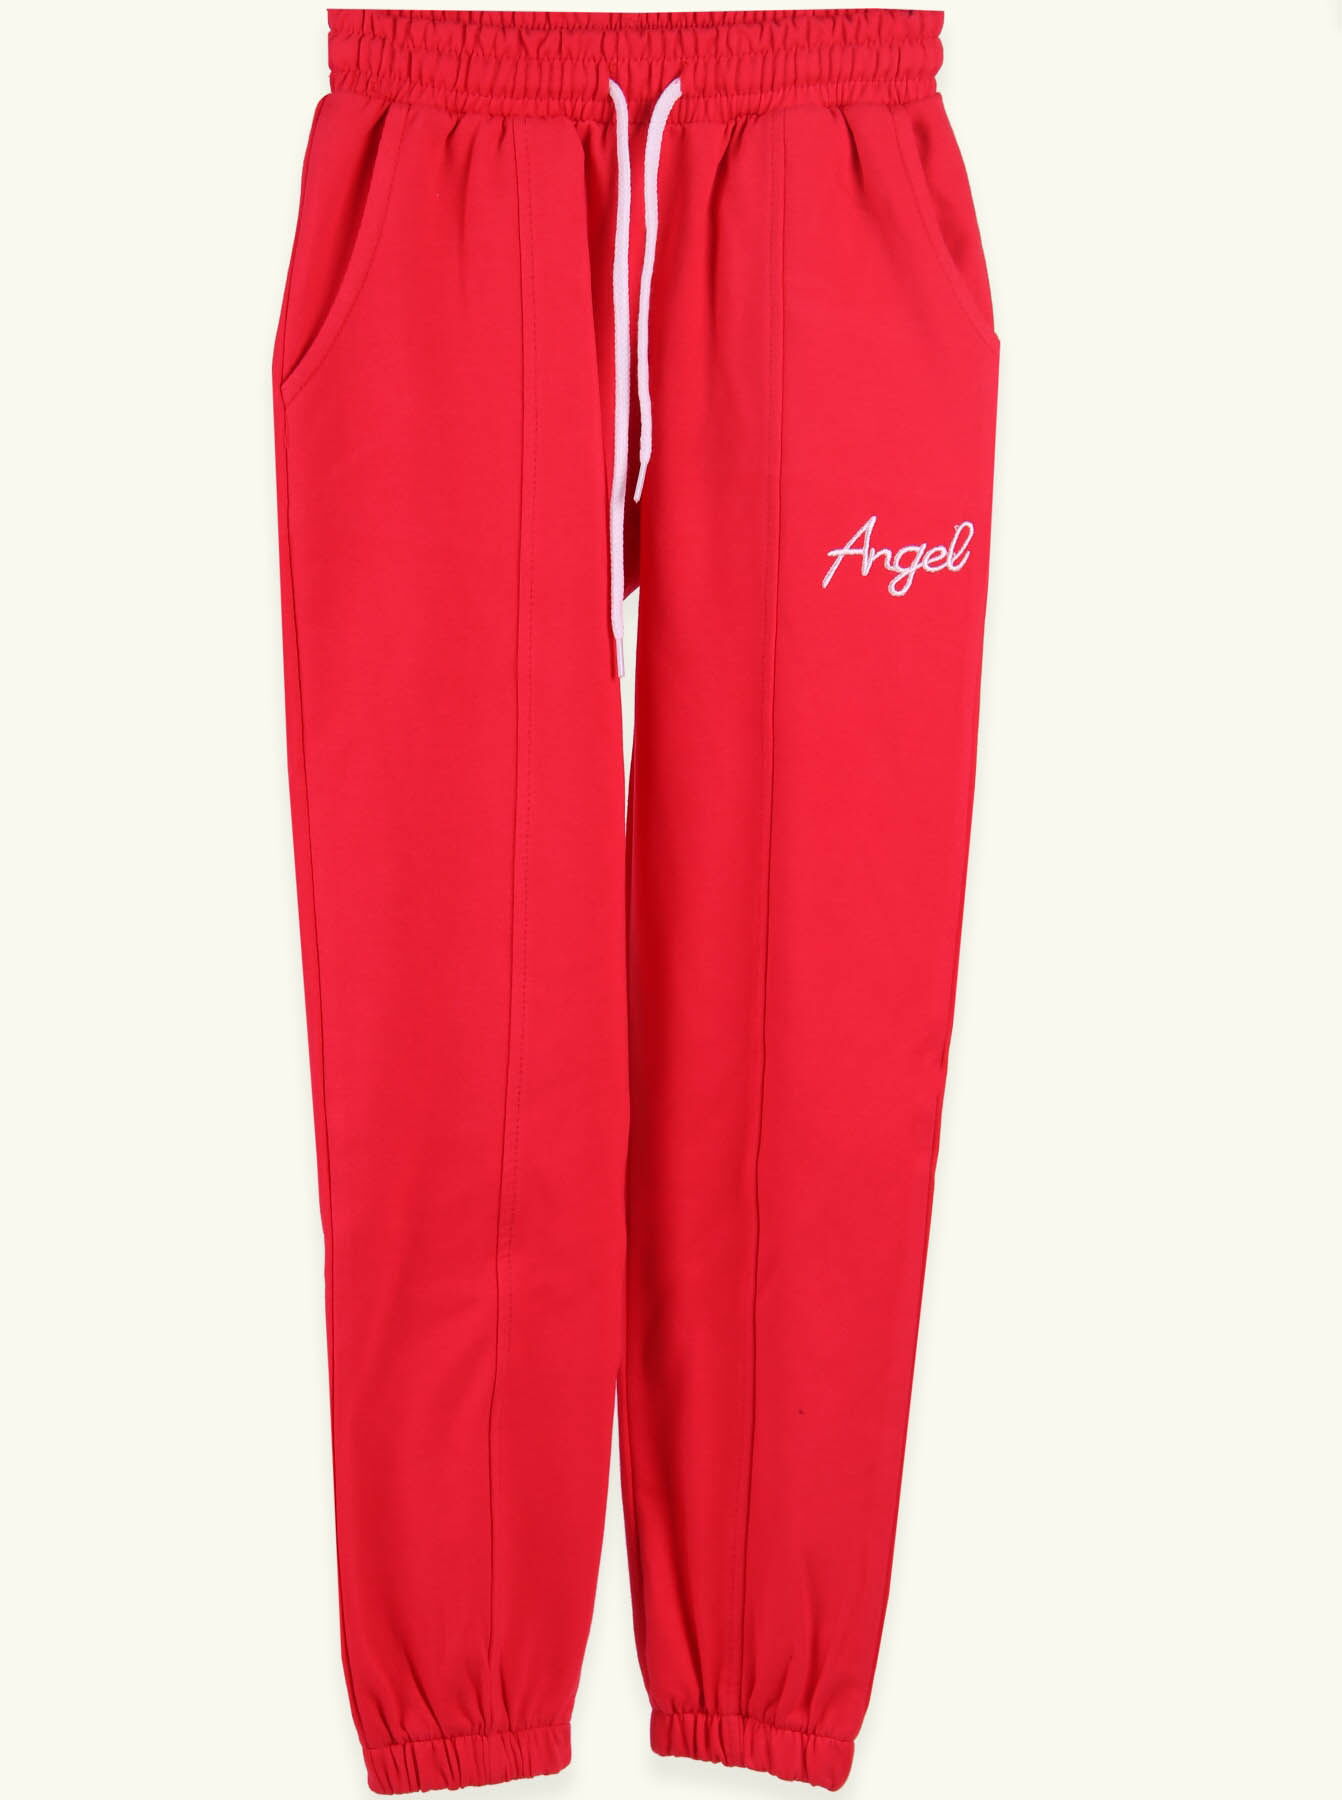 Спортивные штаны для девочки Breeze коралловые 14874 - цена